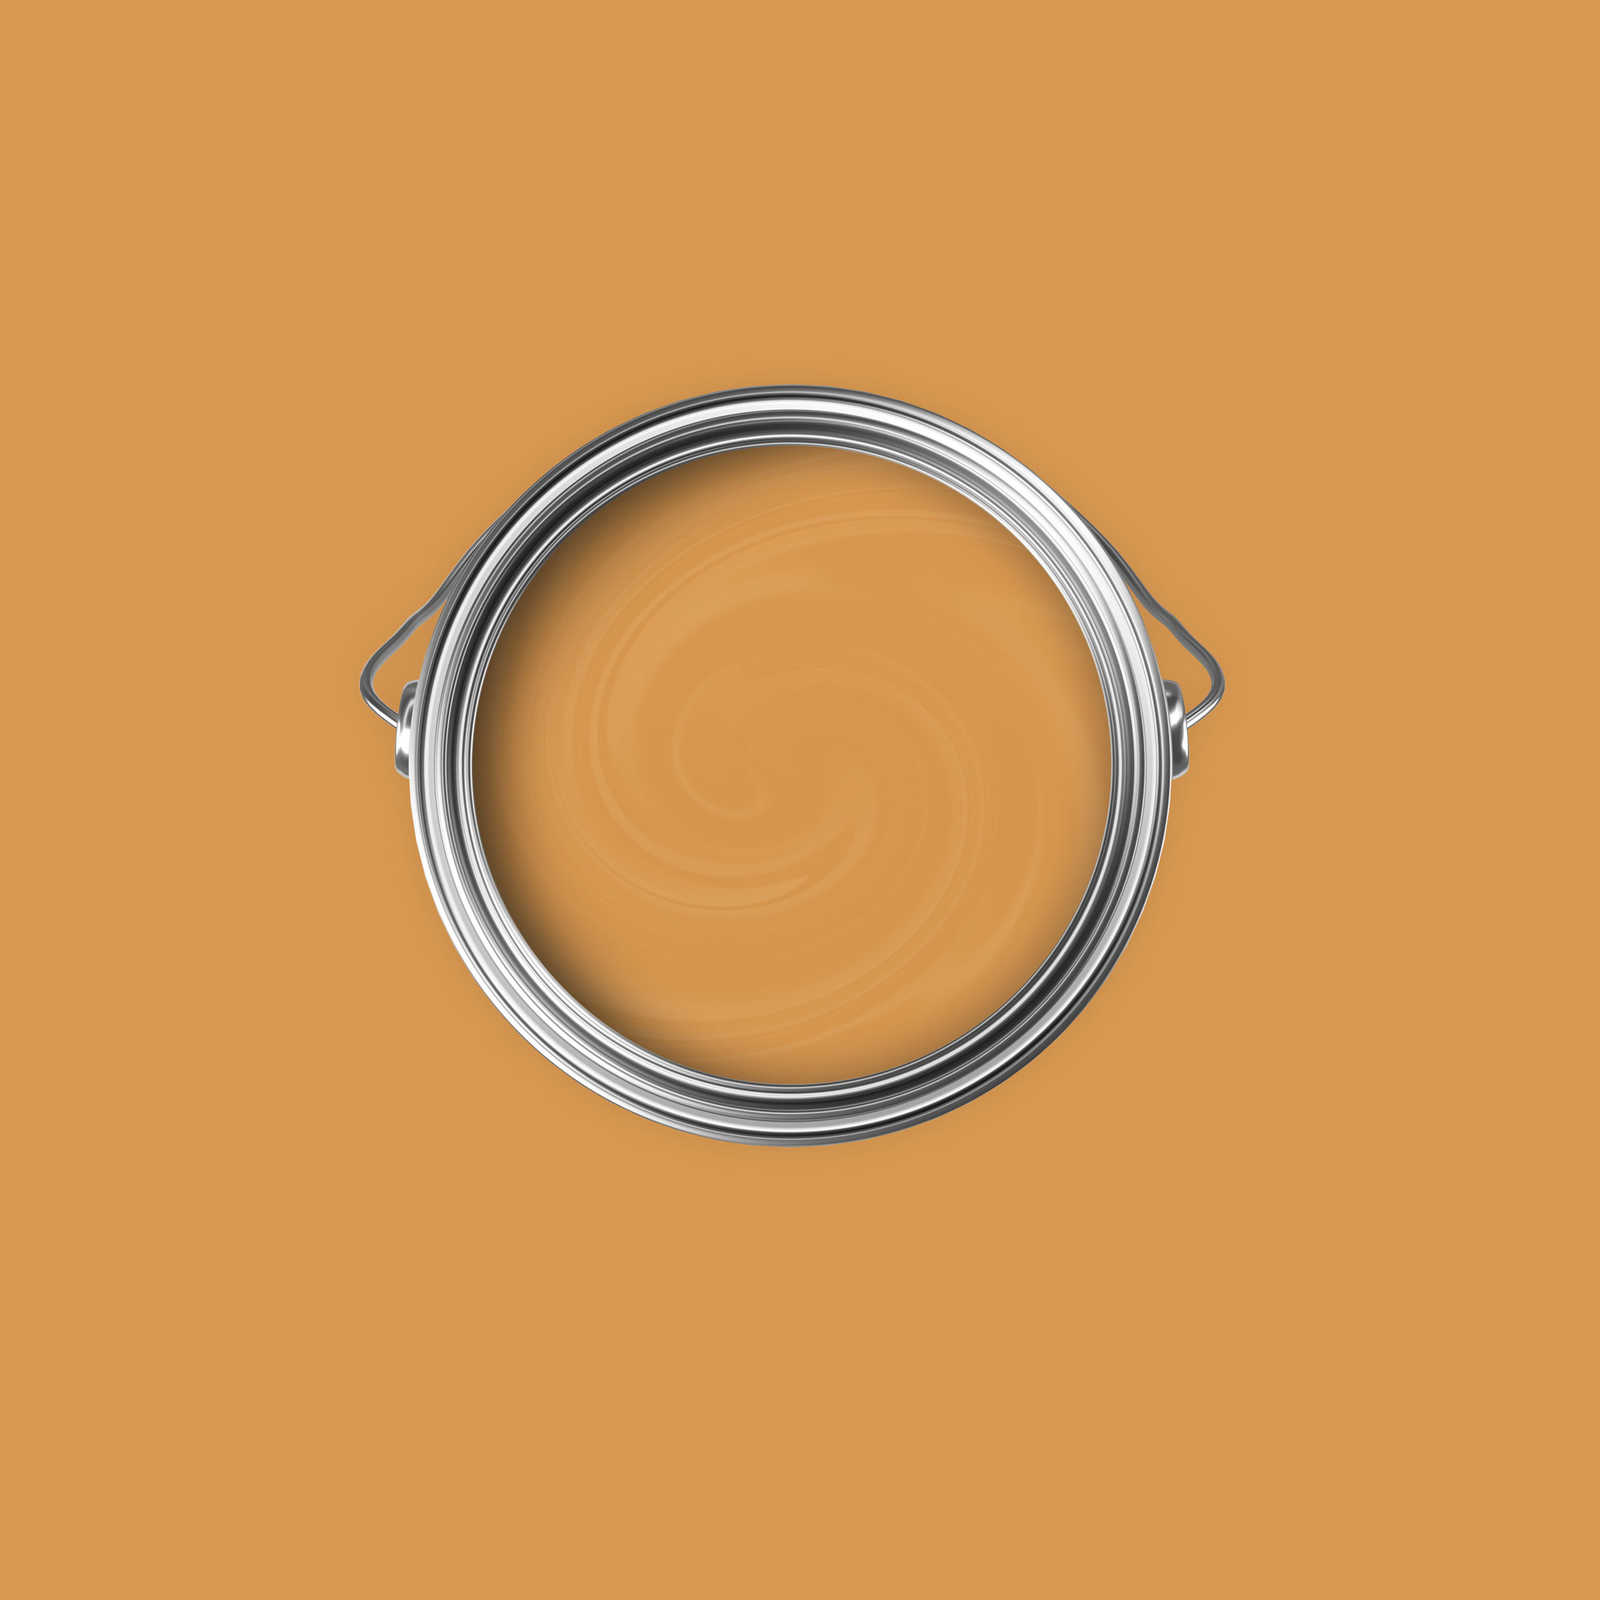             Premium Wall Paint Warm Orange »Beige Orange/Sassy Saffron« NW813 – 2.5 litre
        